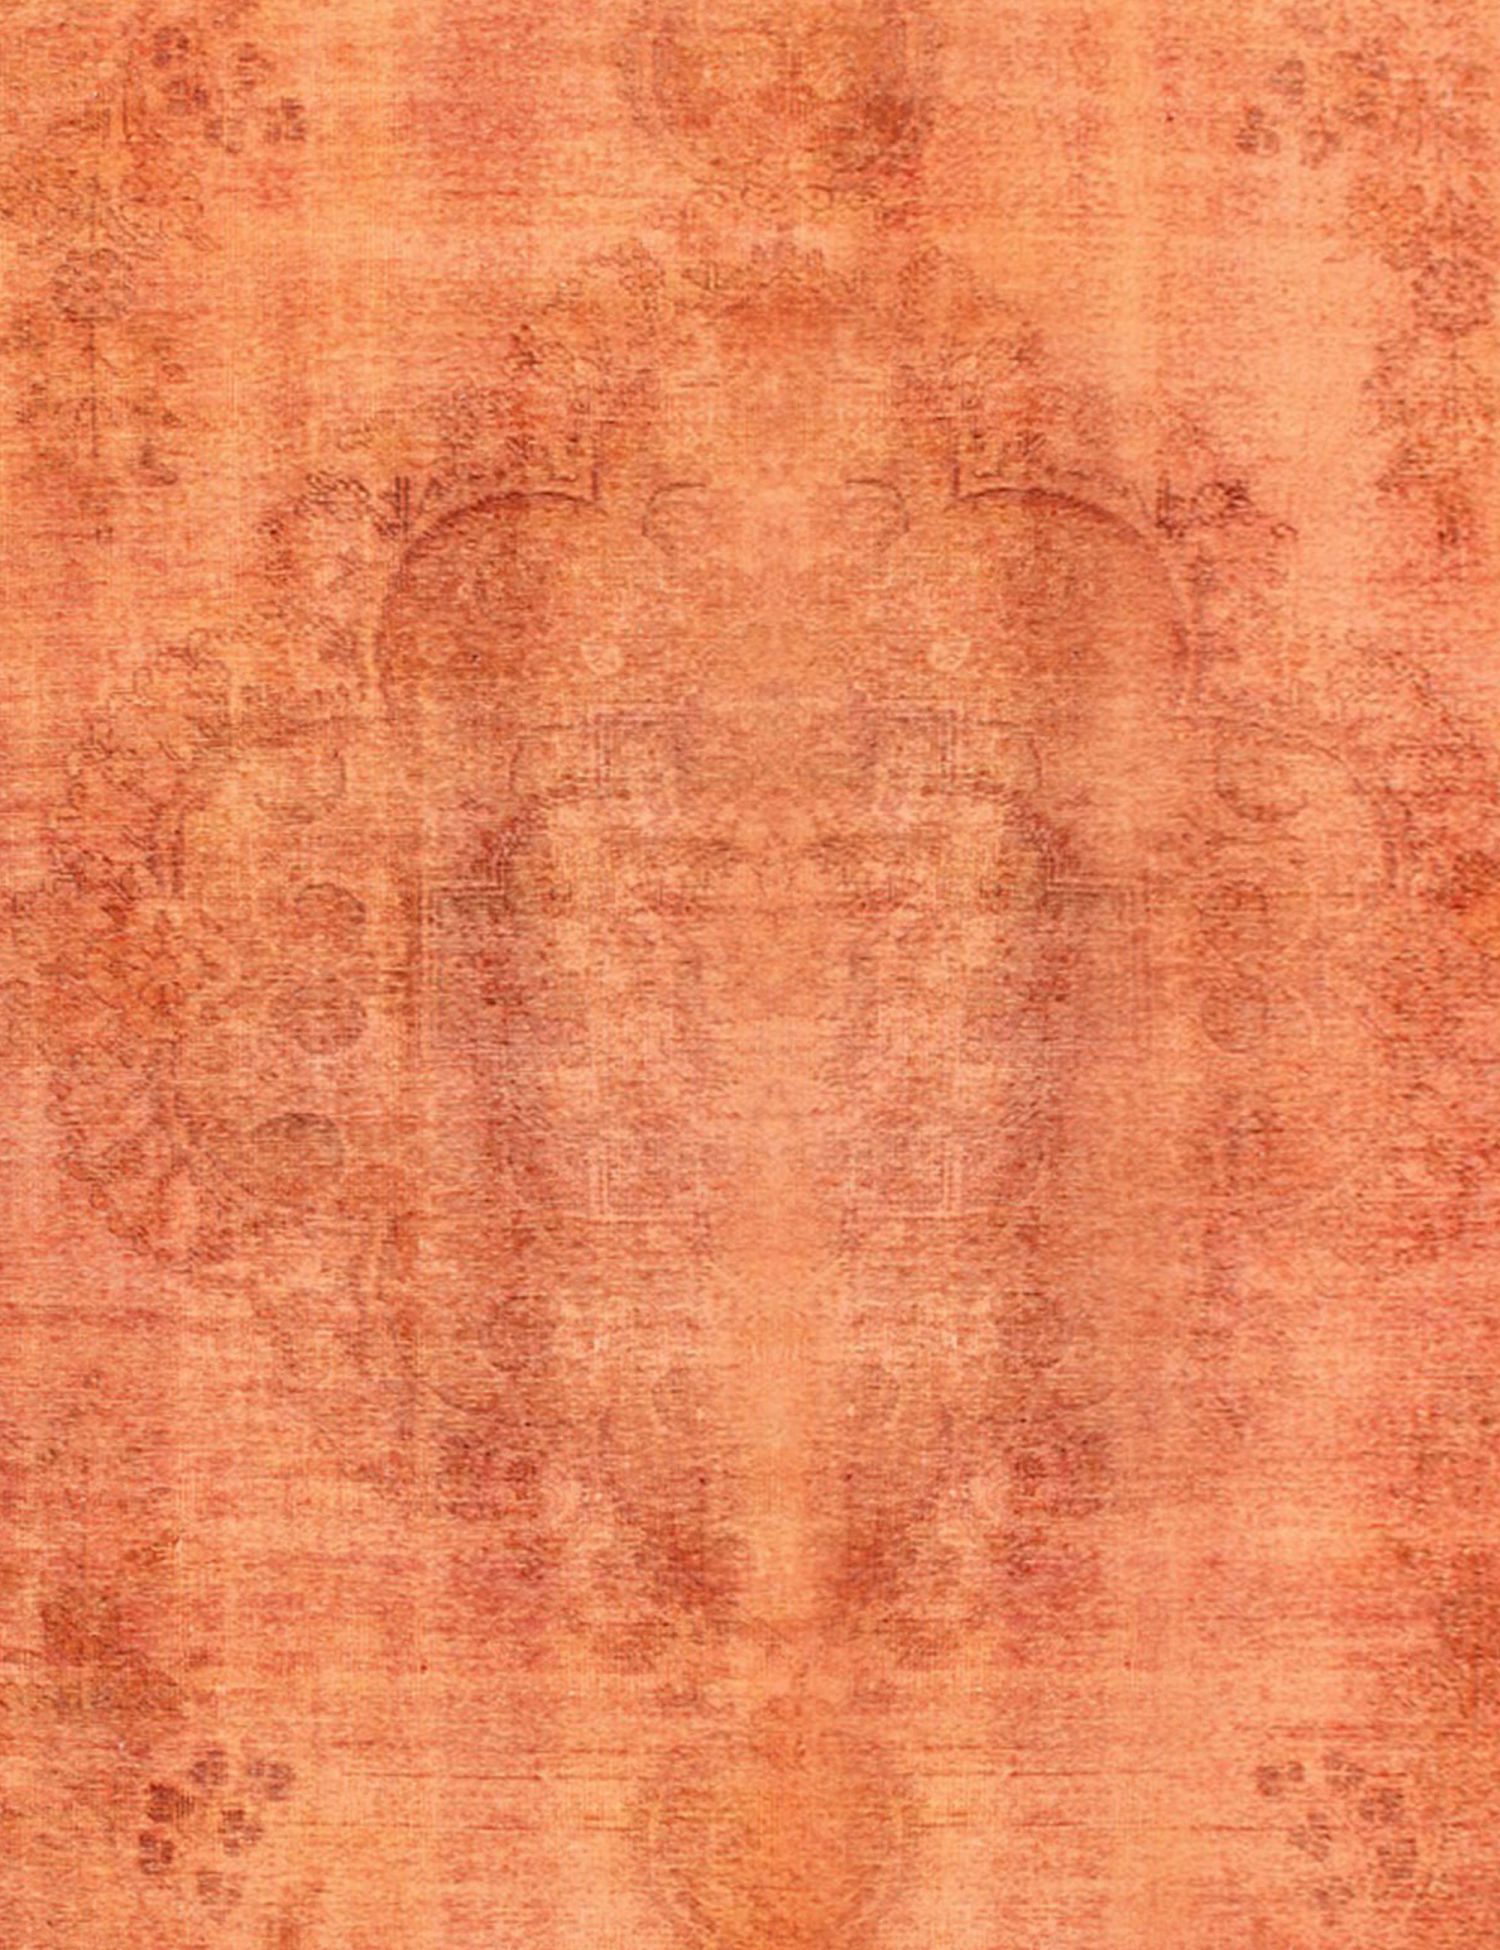 Persischer Vintage Teppich  orange <br/>330 x 285 cm